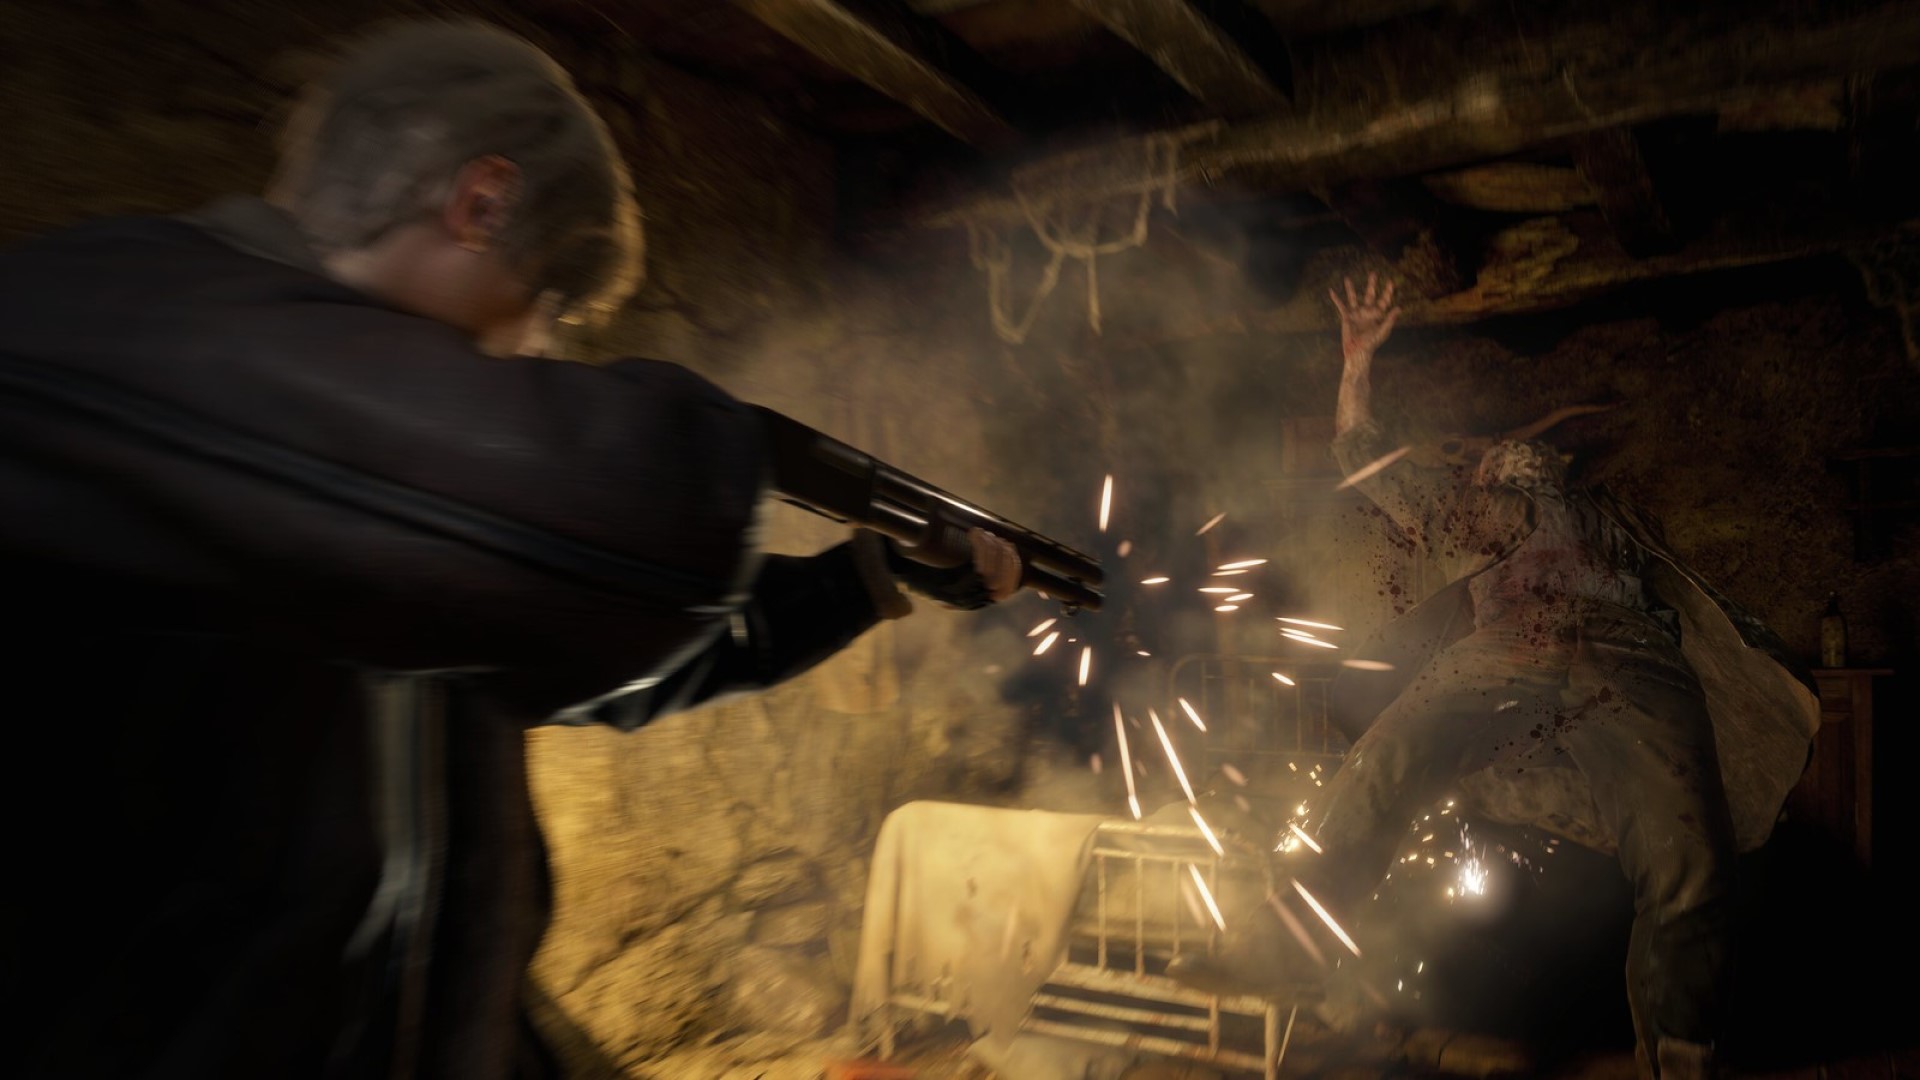 لئون در بازسازی Resident Evil 4 با یک تفنگ ساچمه ای به گناد شلیک می کند